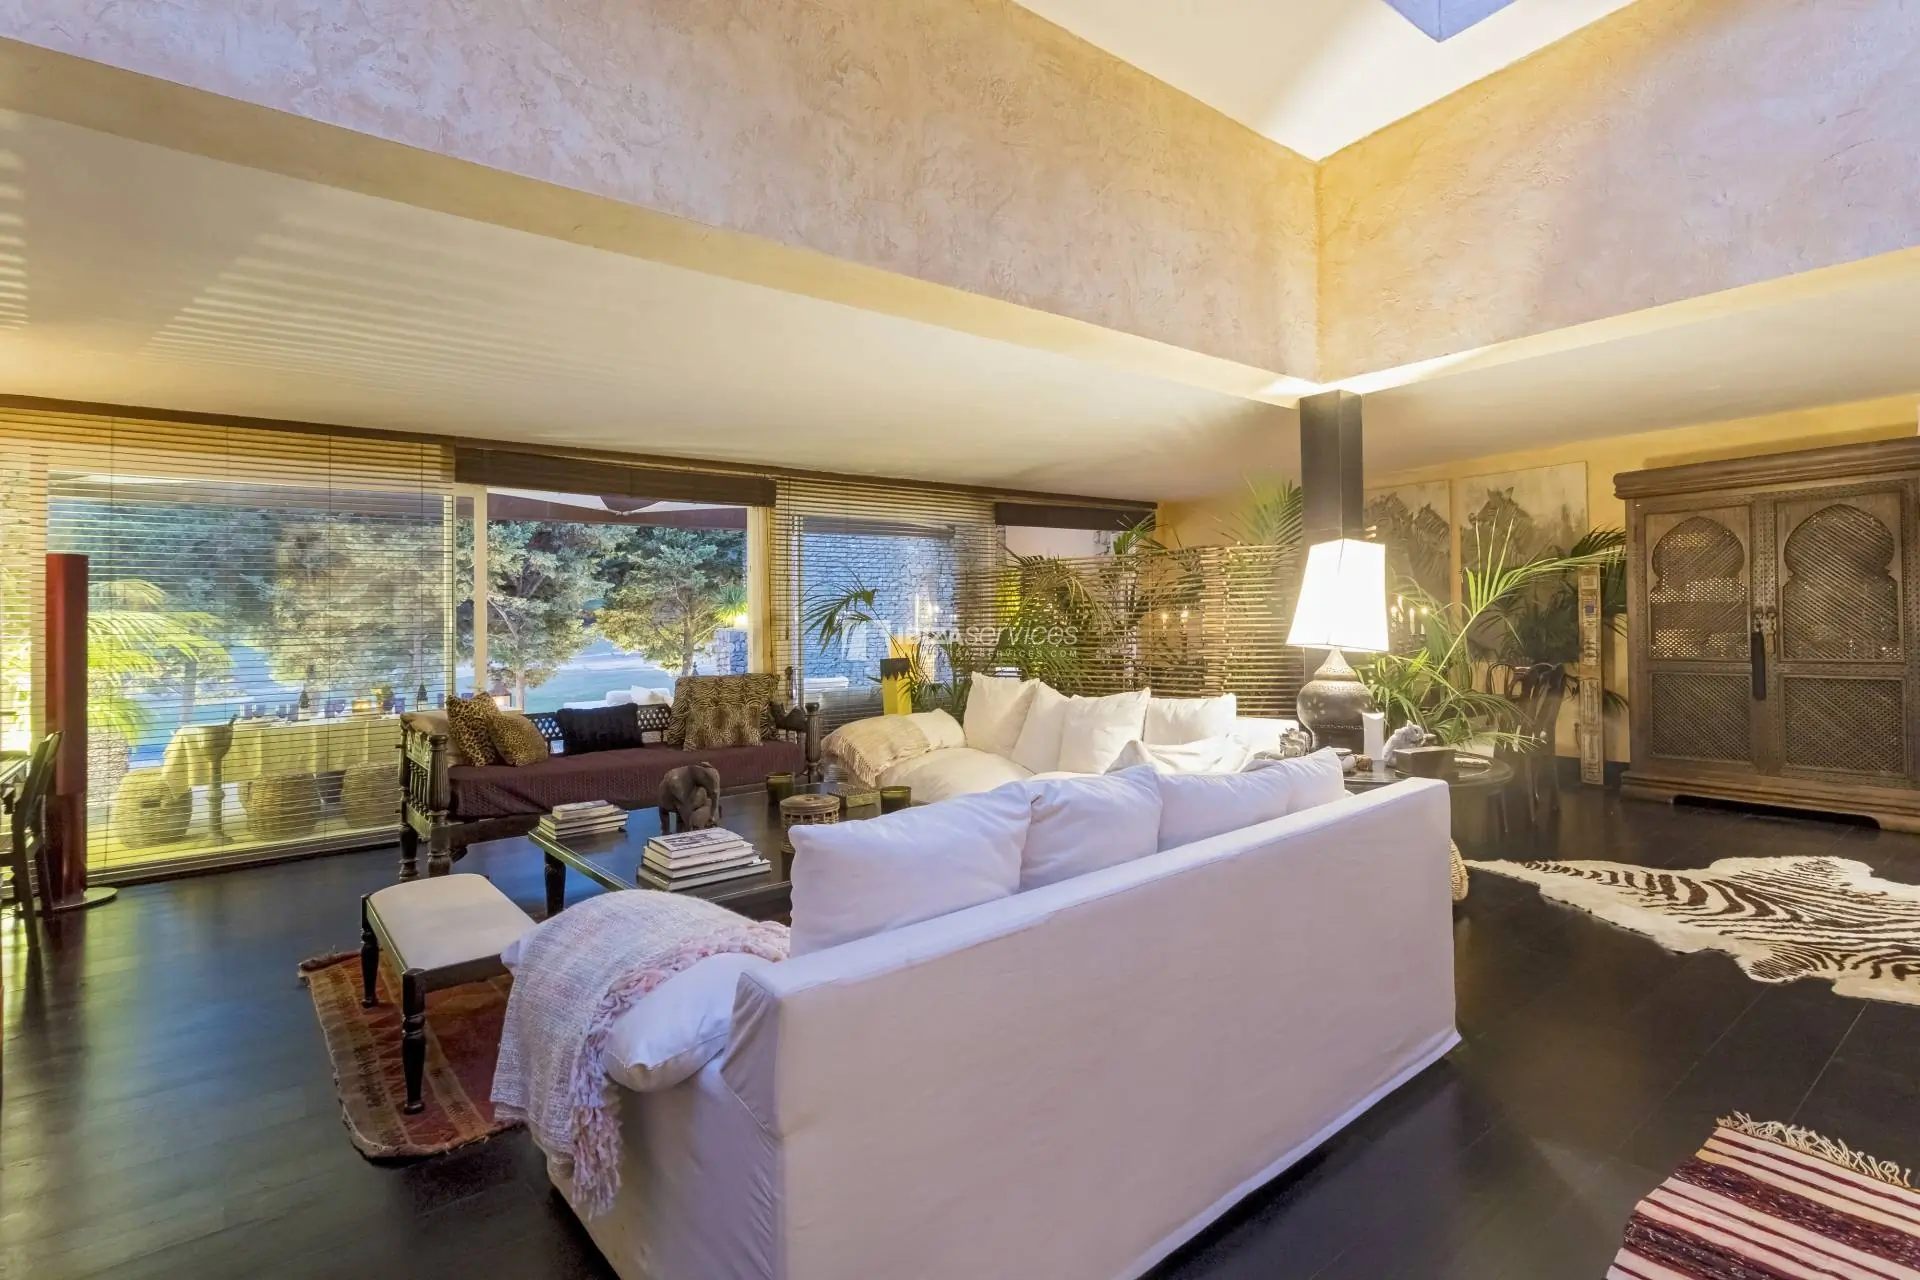 Villa de style Bali à vendre Roca Llisa